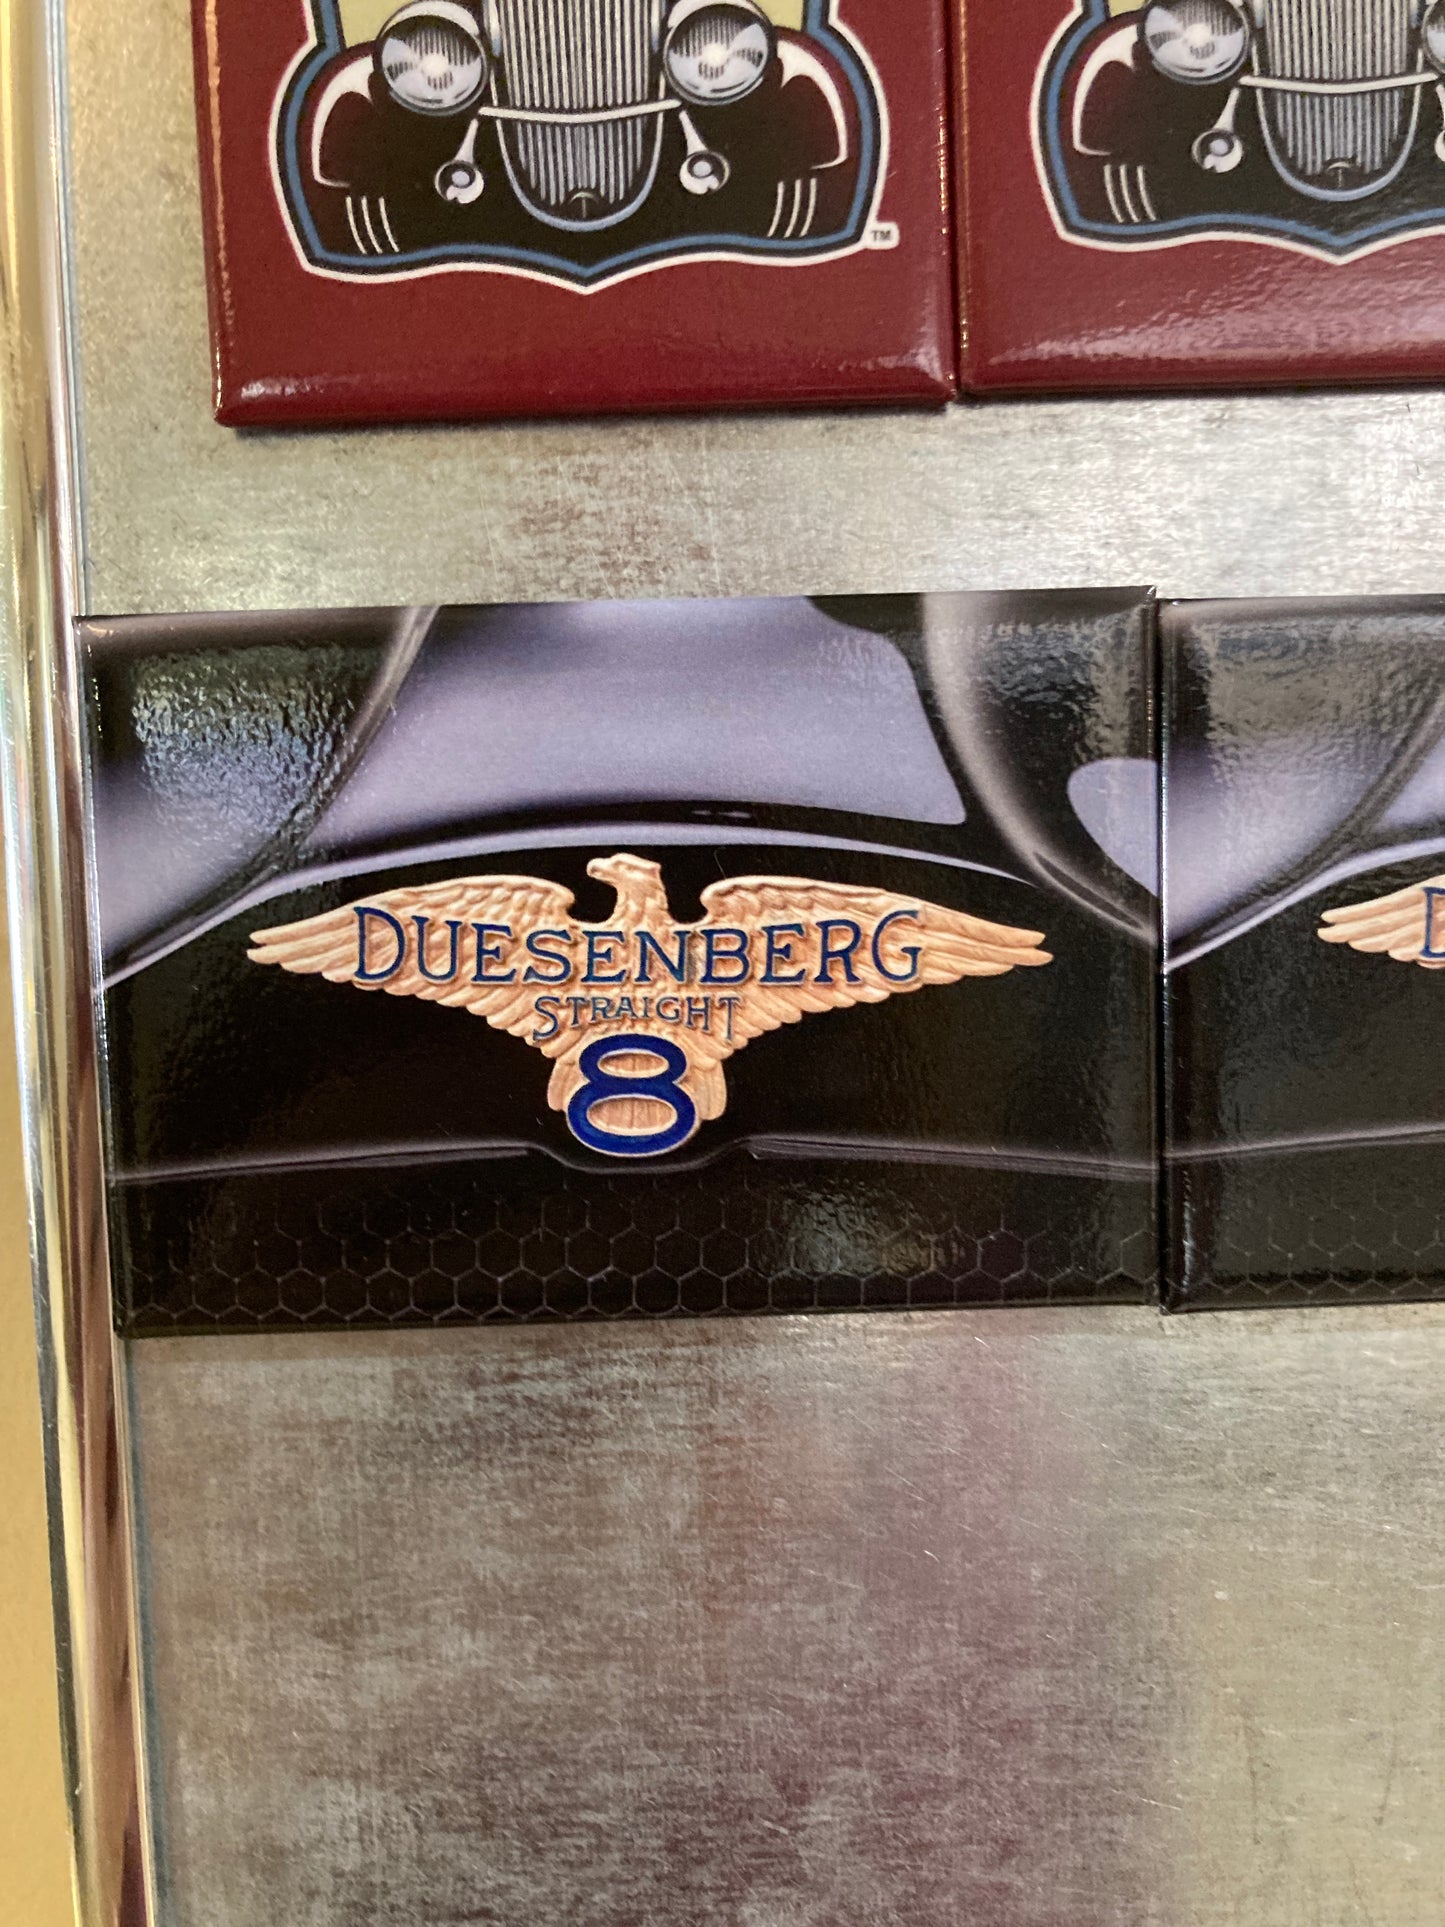 Duesenberg Straight 8 magnet